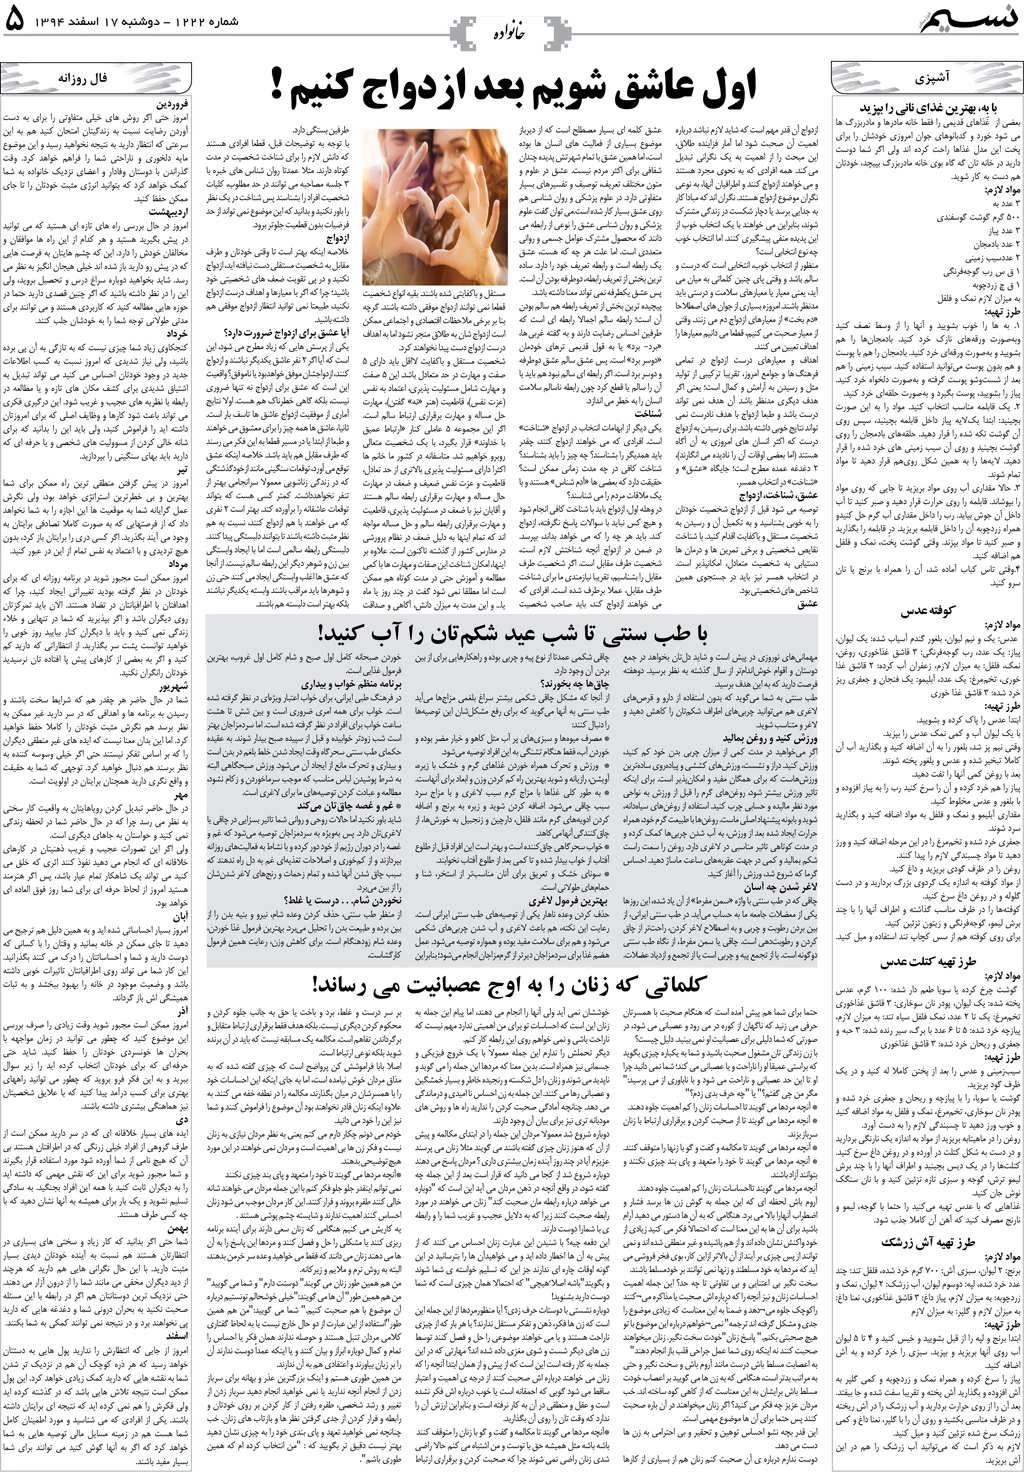 صفحه خانواده روزنامه نسیم شماره 1222